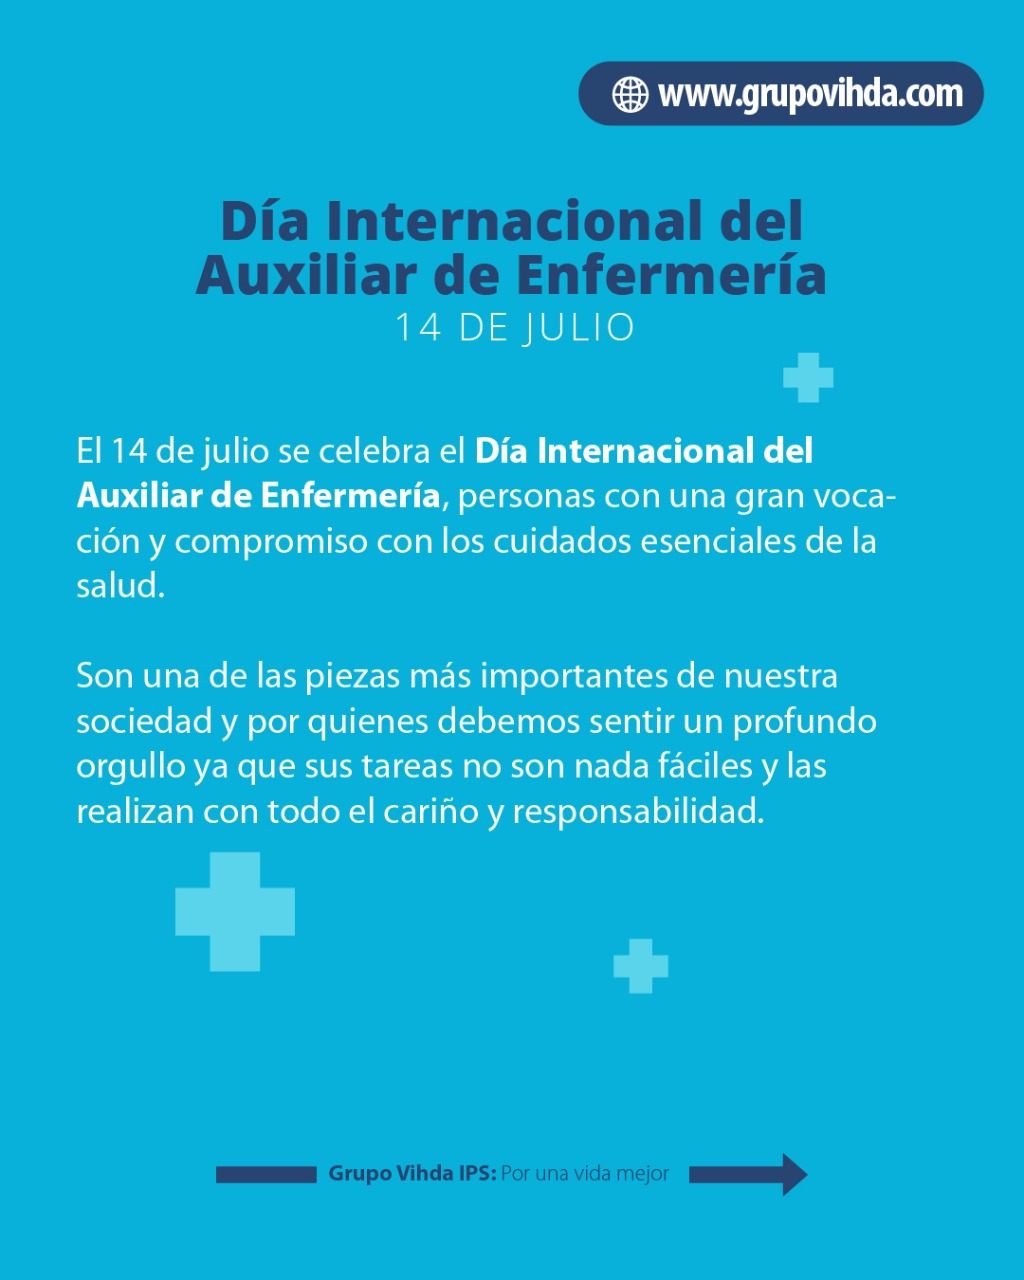 Día Internacional del Auxiliar de Enfermería: 6 curiosidades sobre